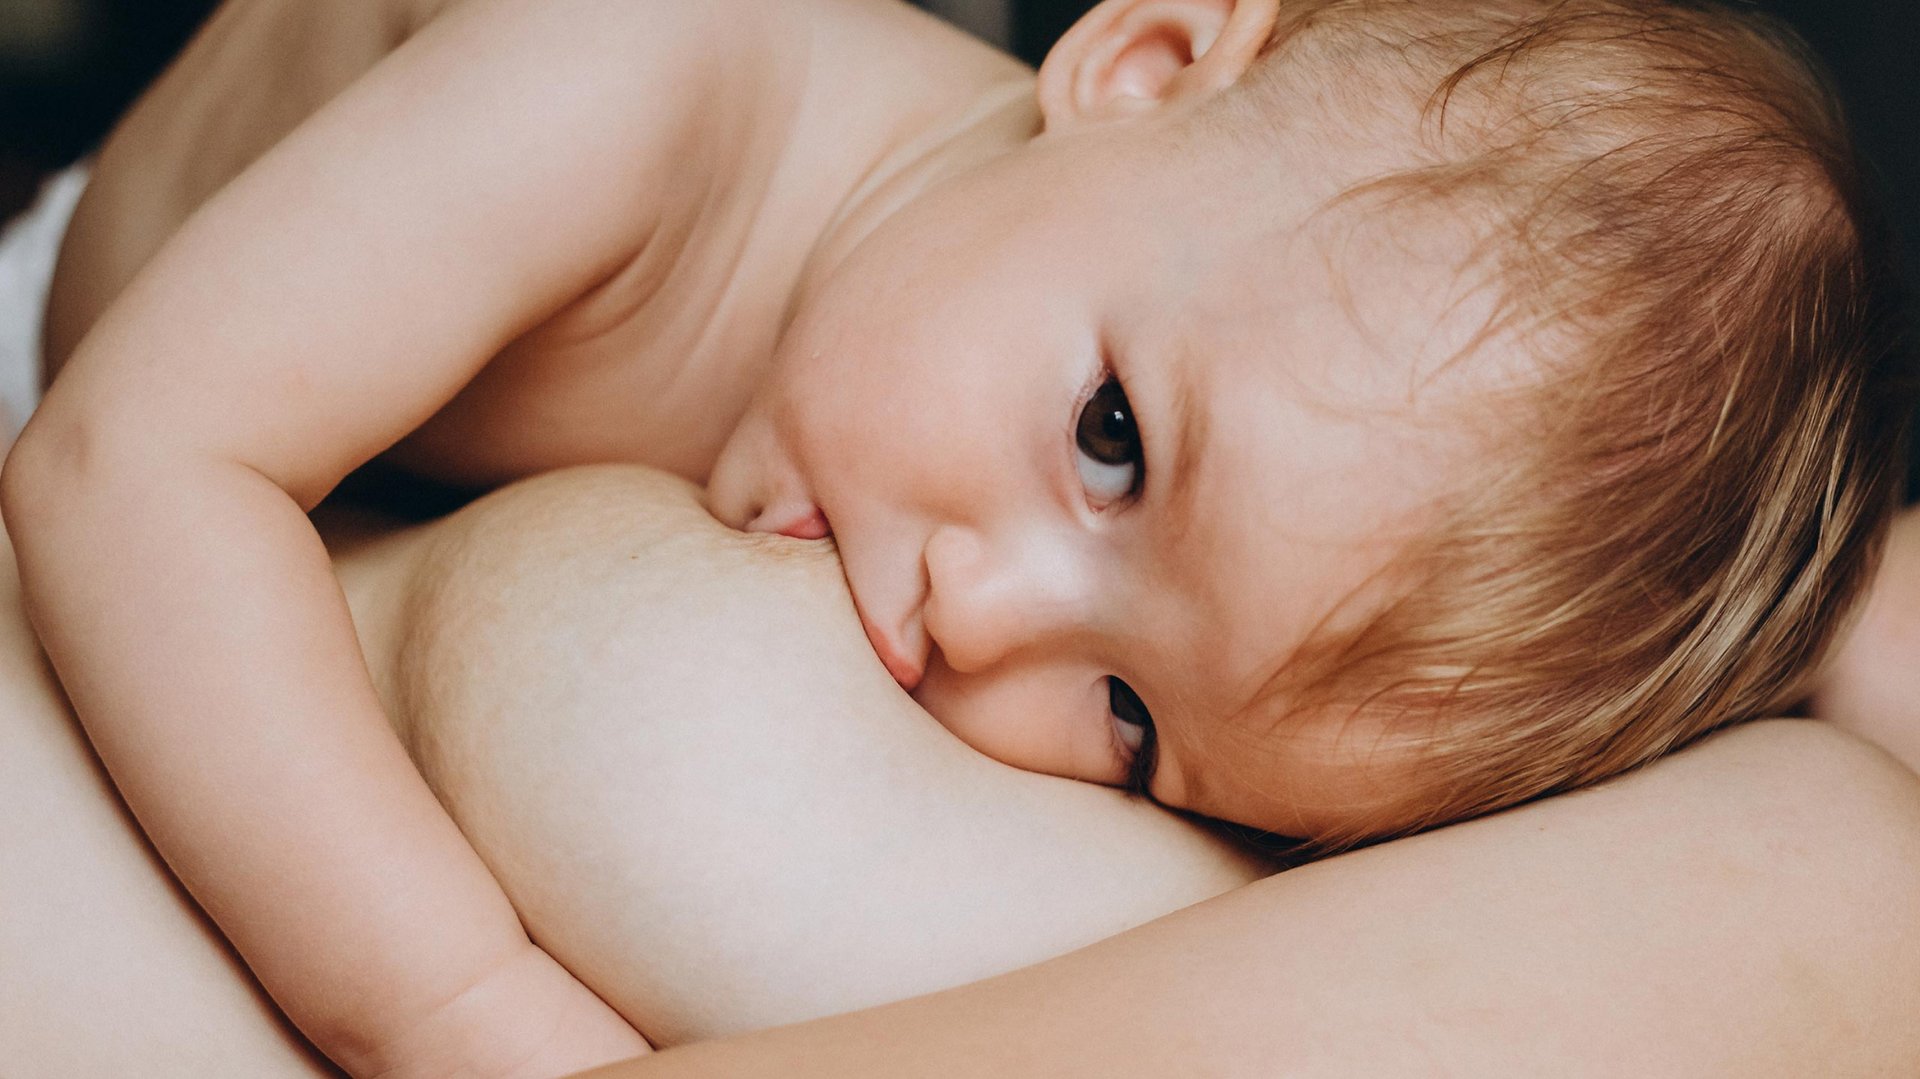 Dziecko lezy na mamie pijac z jej piersi mleko